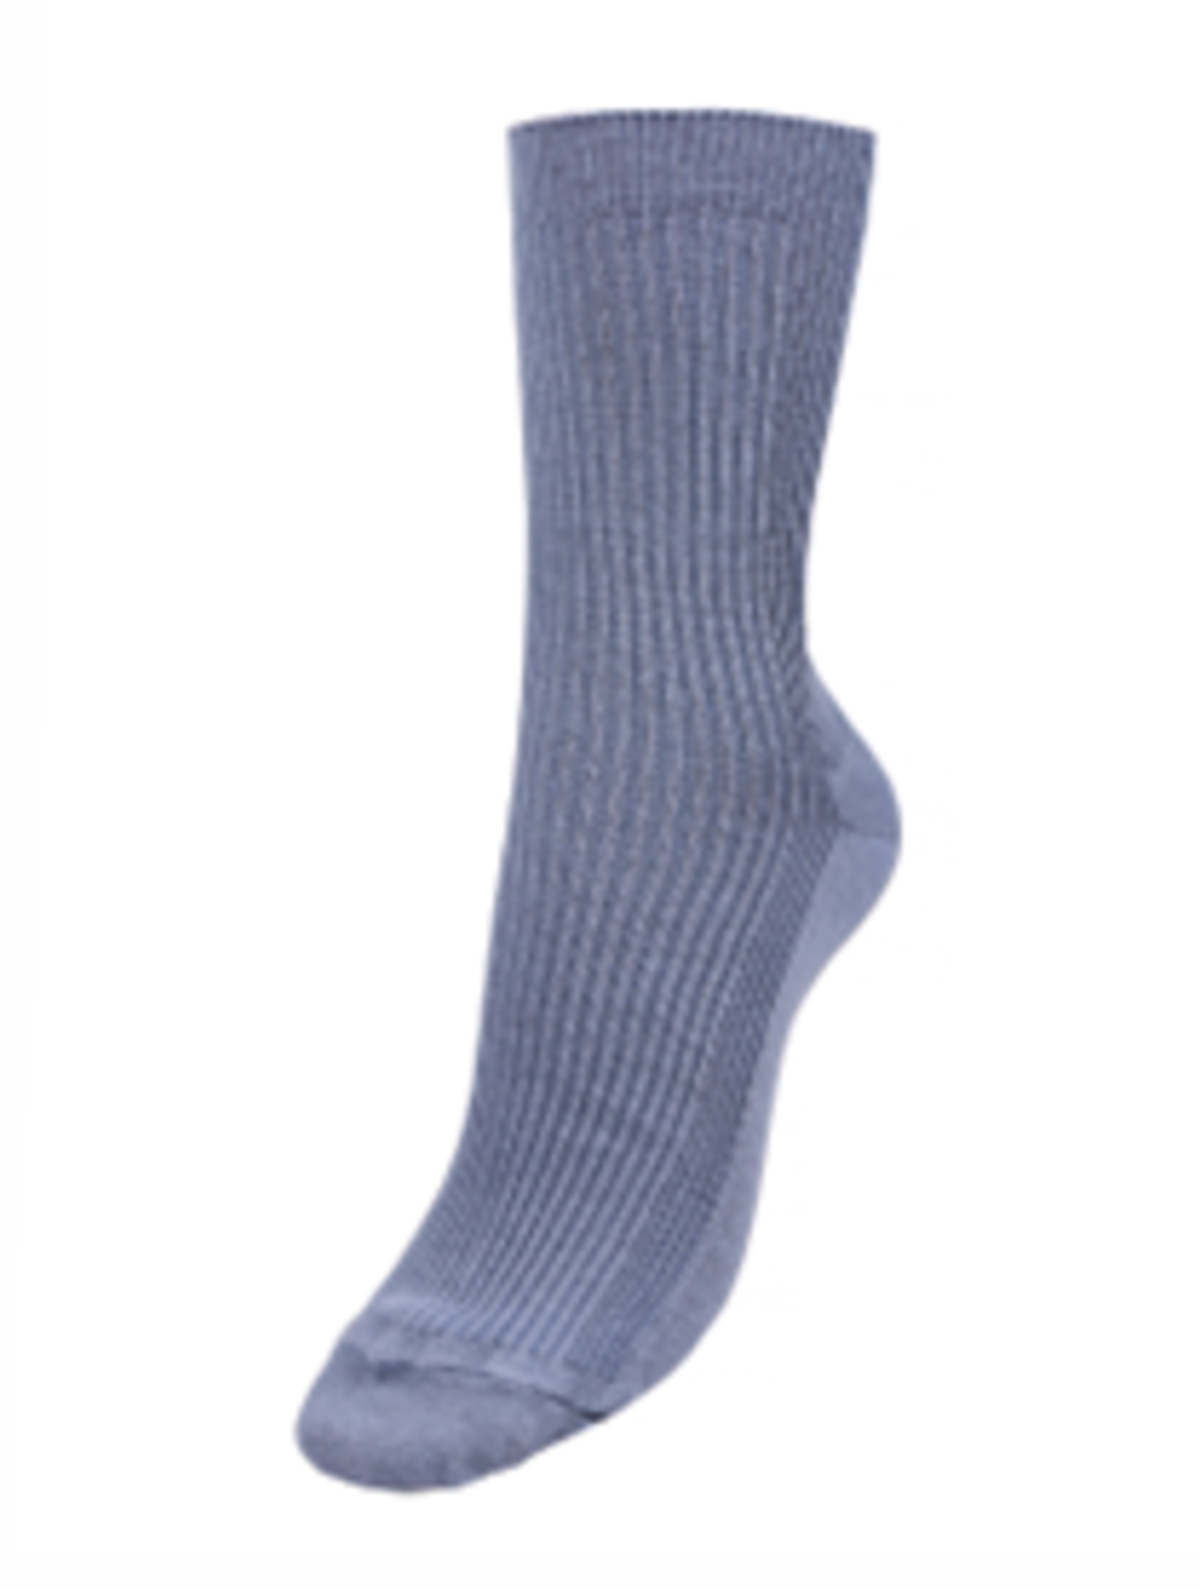 Мужские носки, носки арт.439368